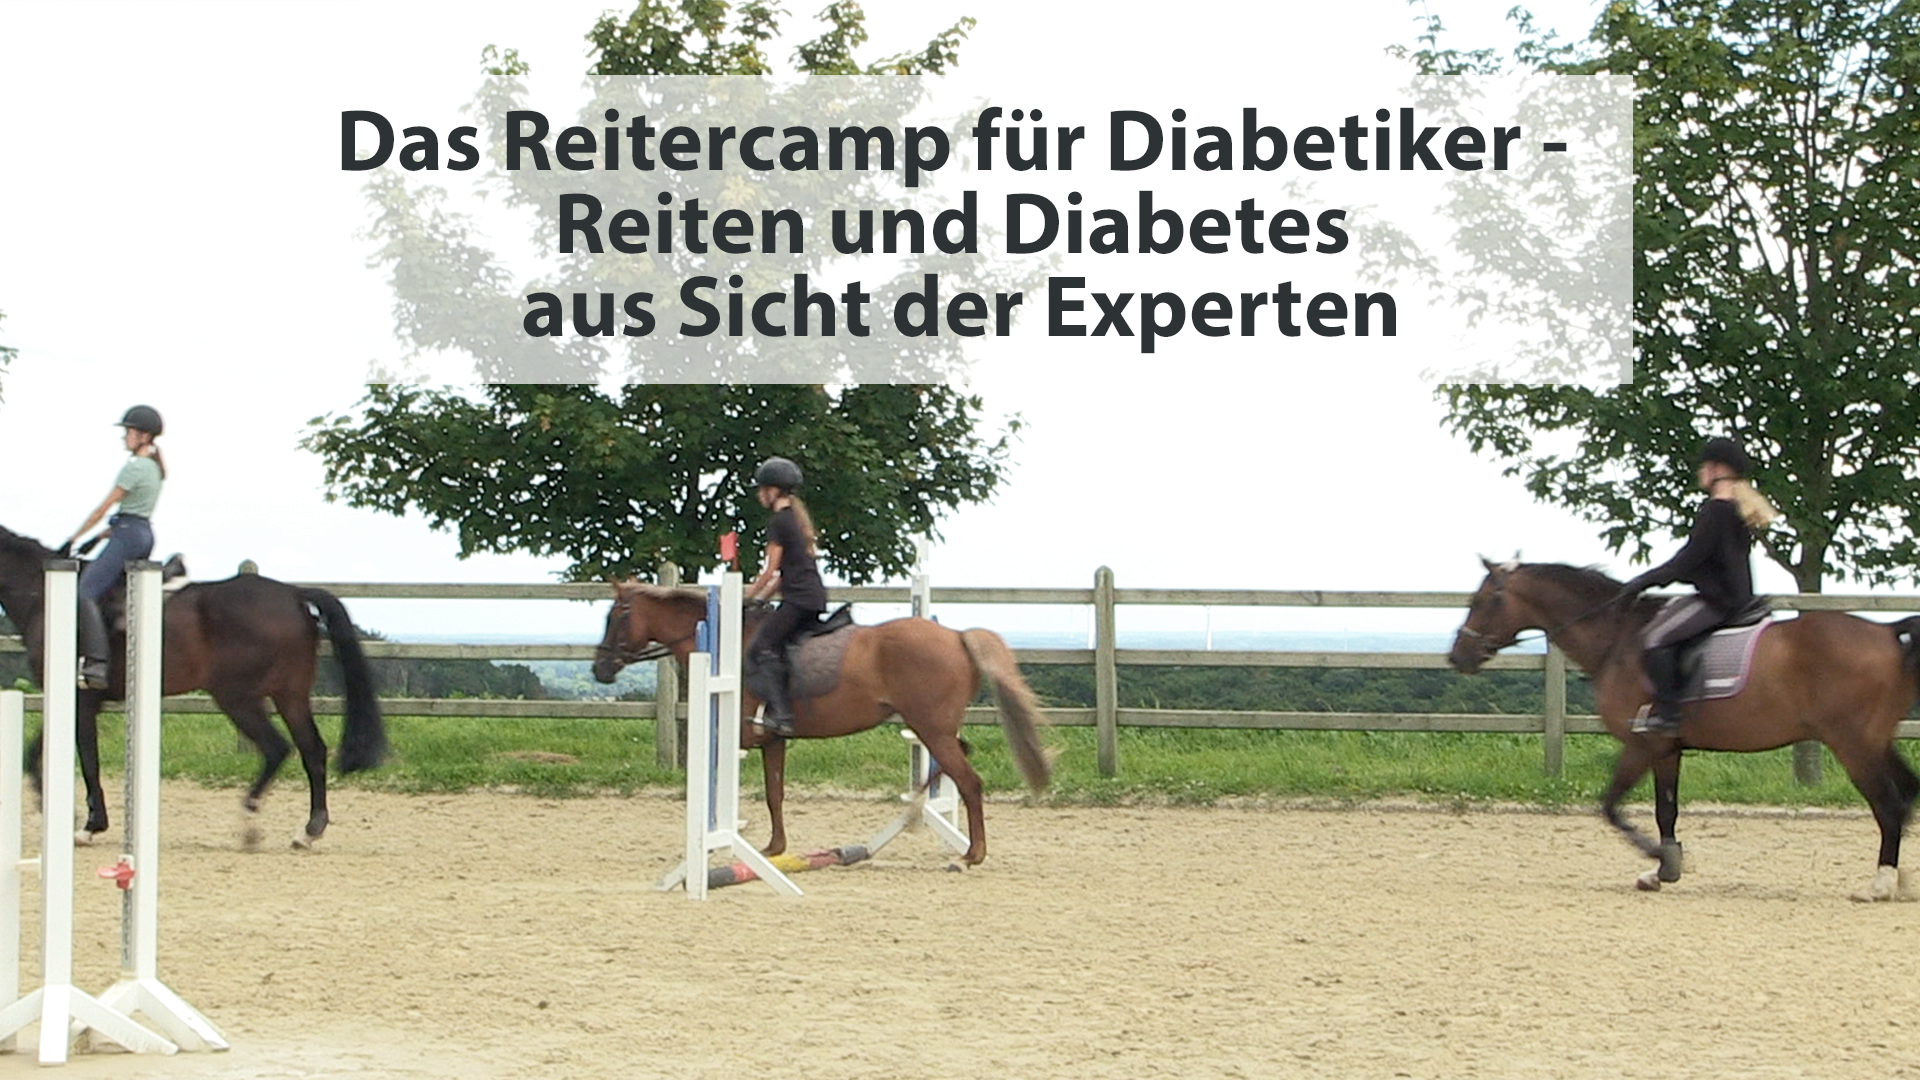 Das Reitercamp für Diabetiker – Reiten und Diabetes aus Sicht der Experten